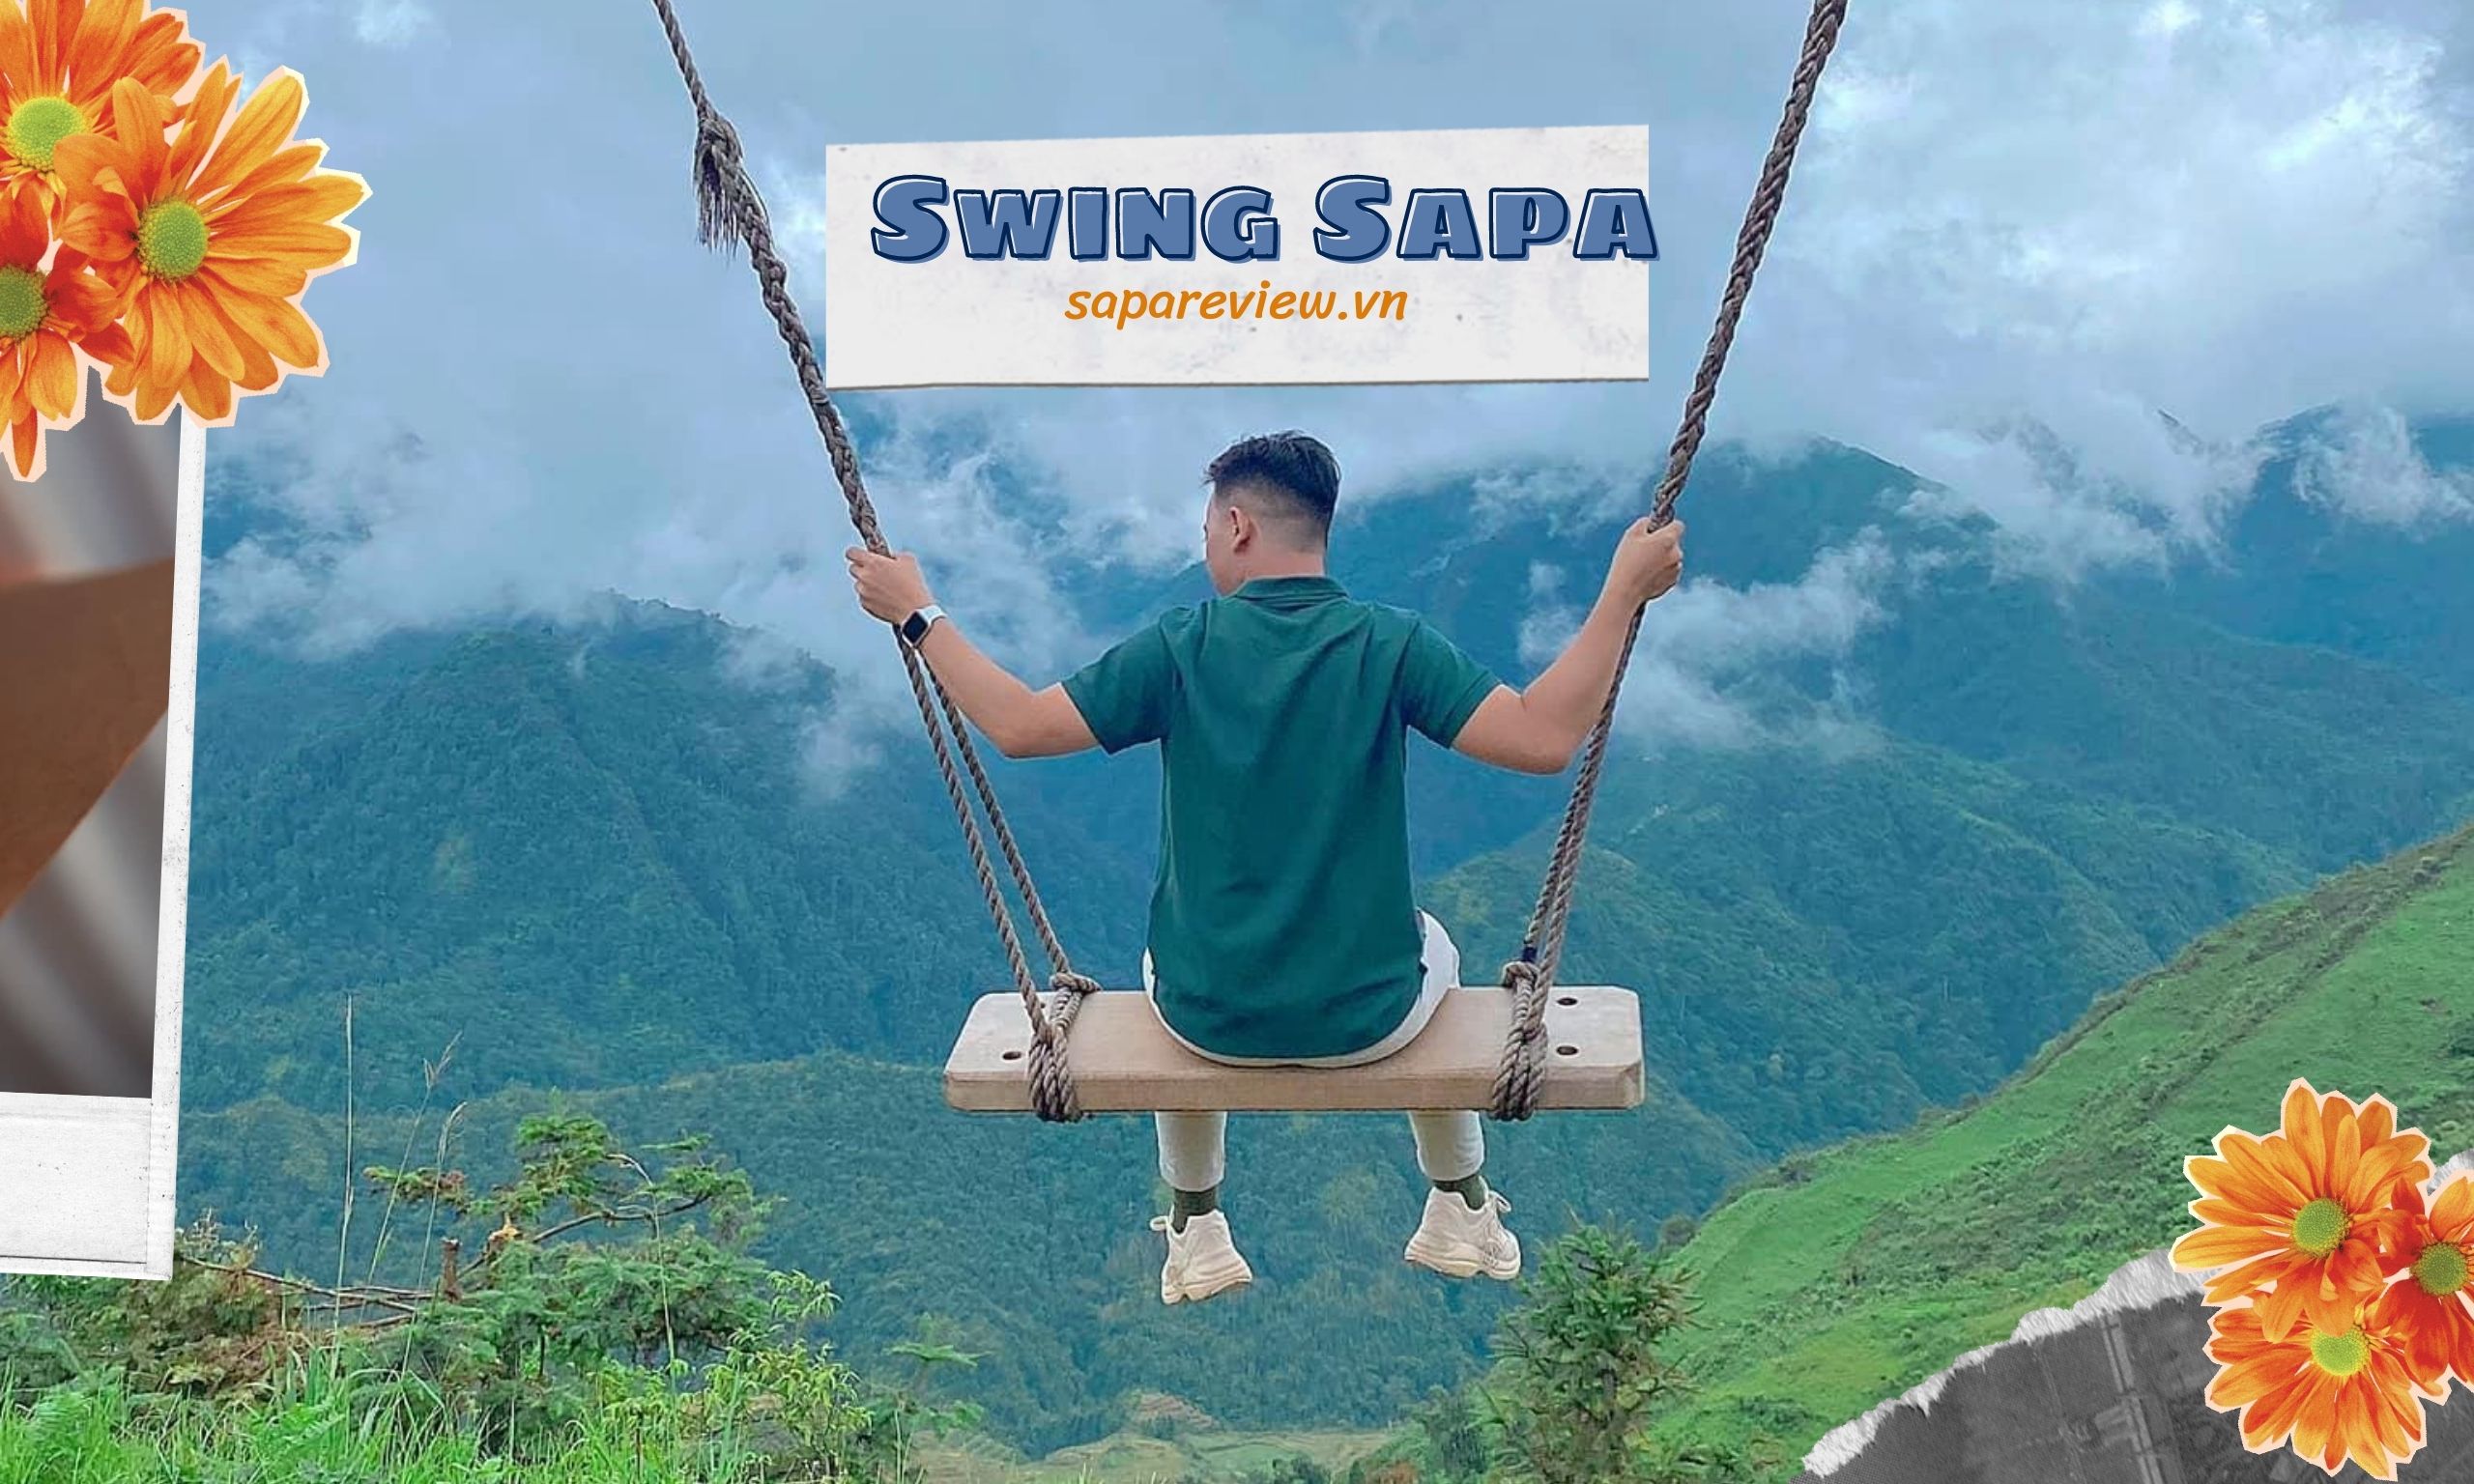 Địa chỉ Swing Sapa coffee – Hướng dẫn đường đến Swing